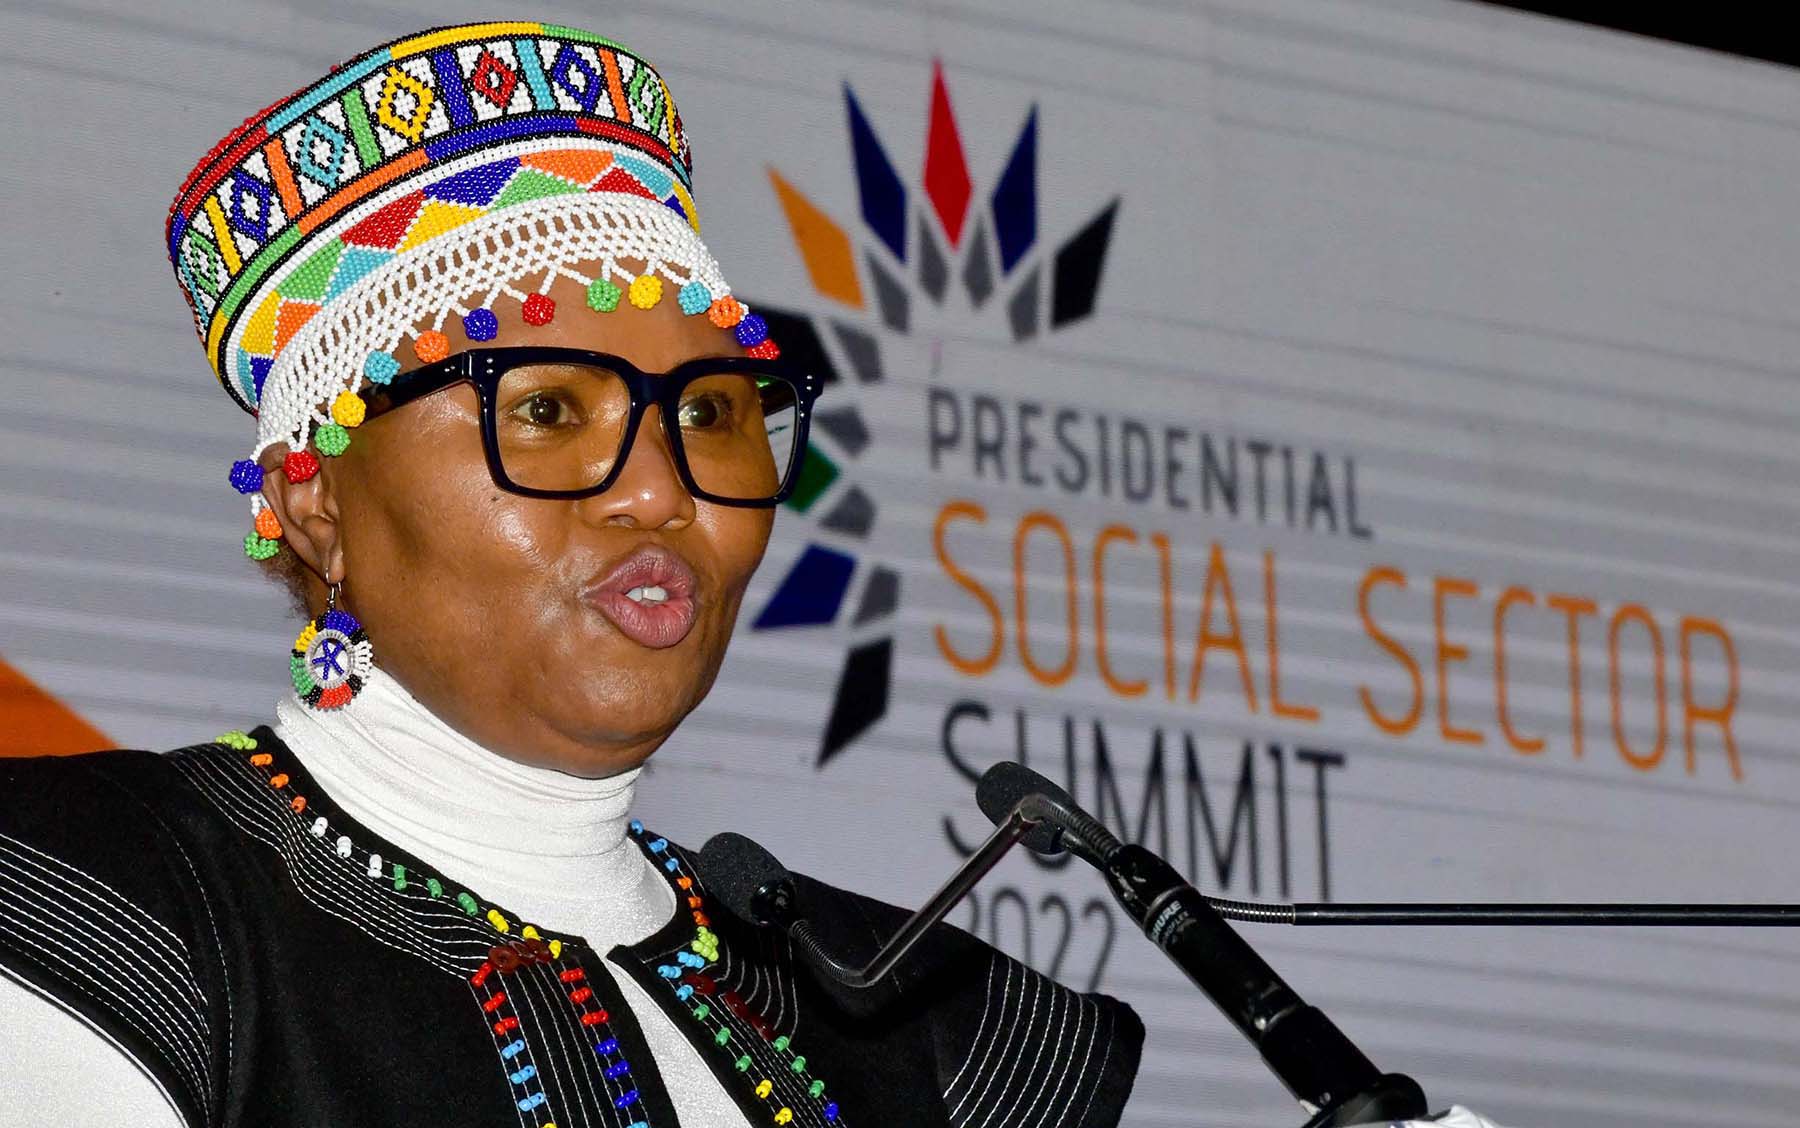 presidential social summit lindiwe zulu